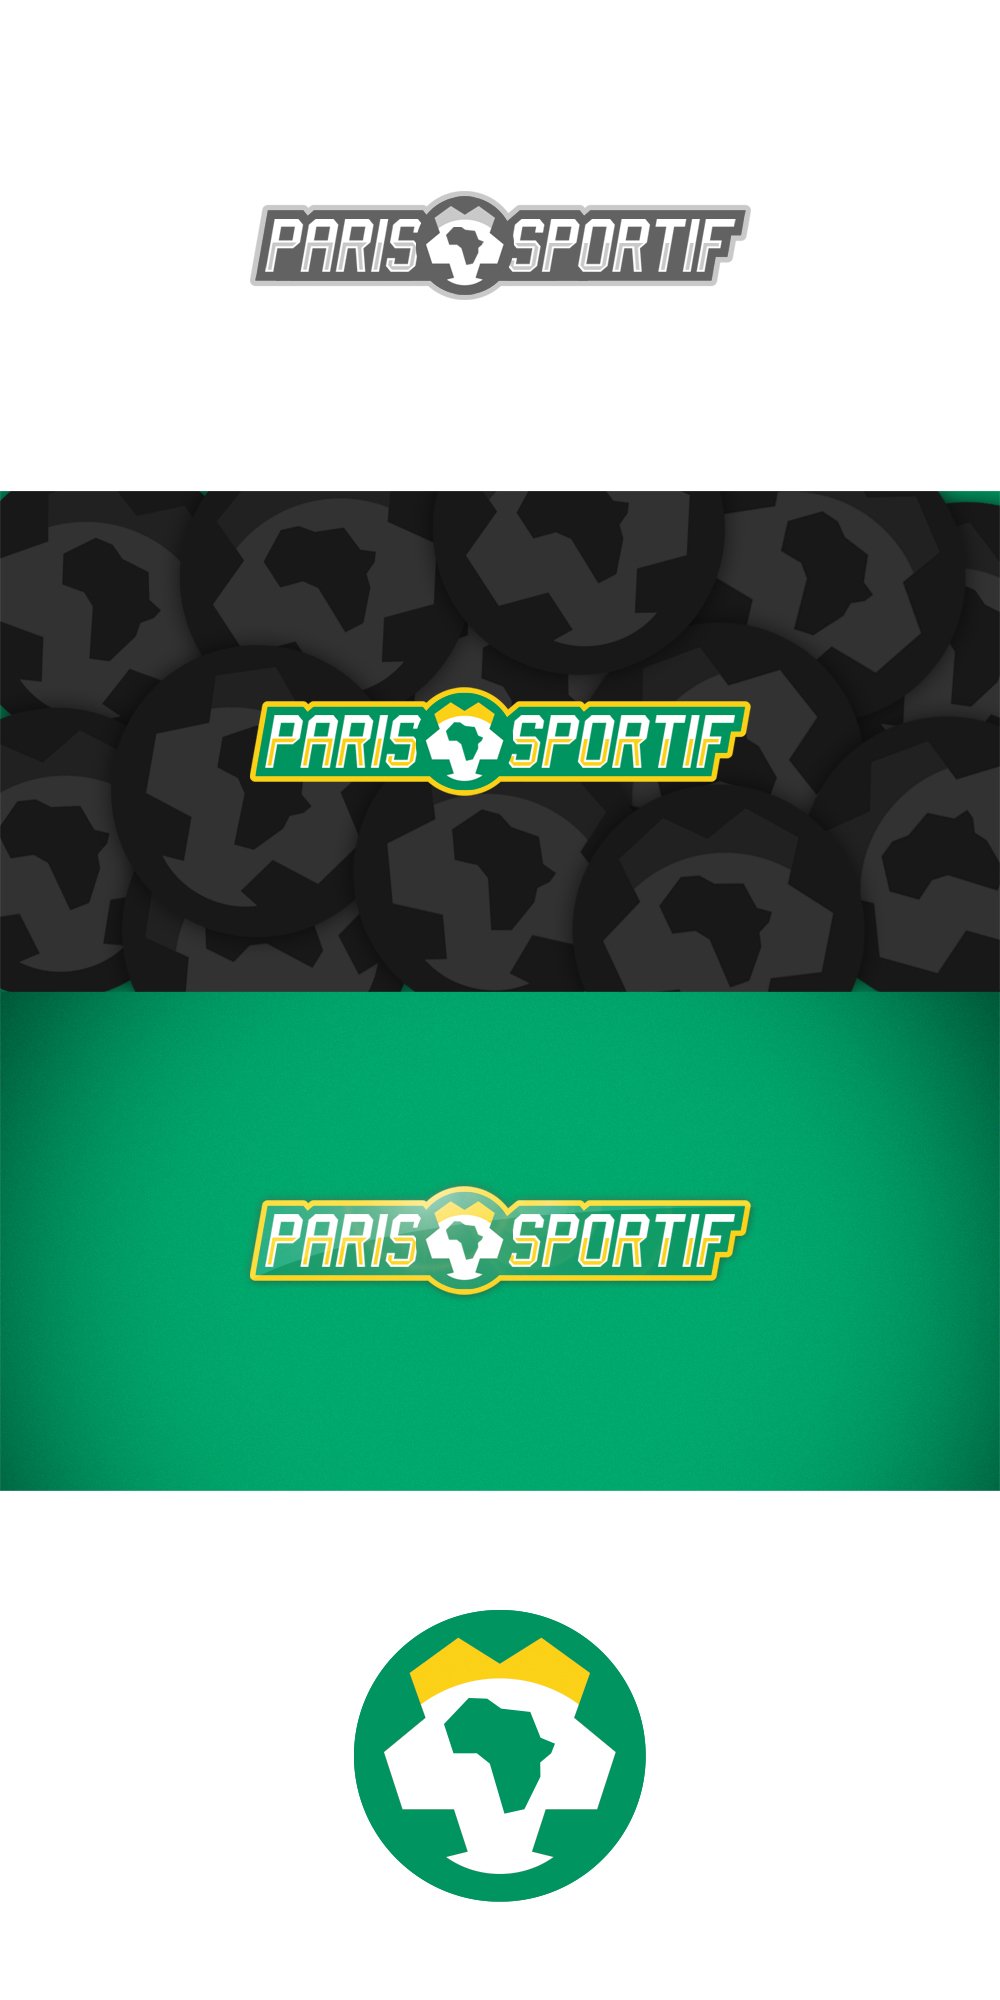 Paris Sportif logo 4